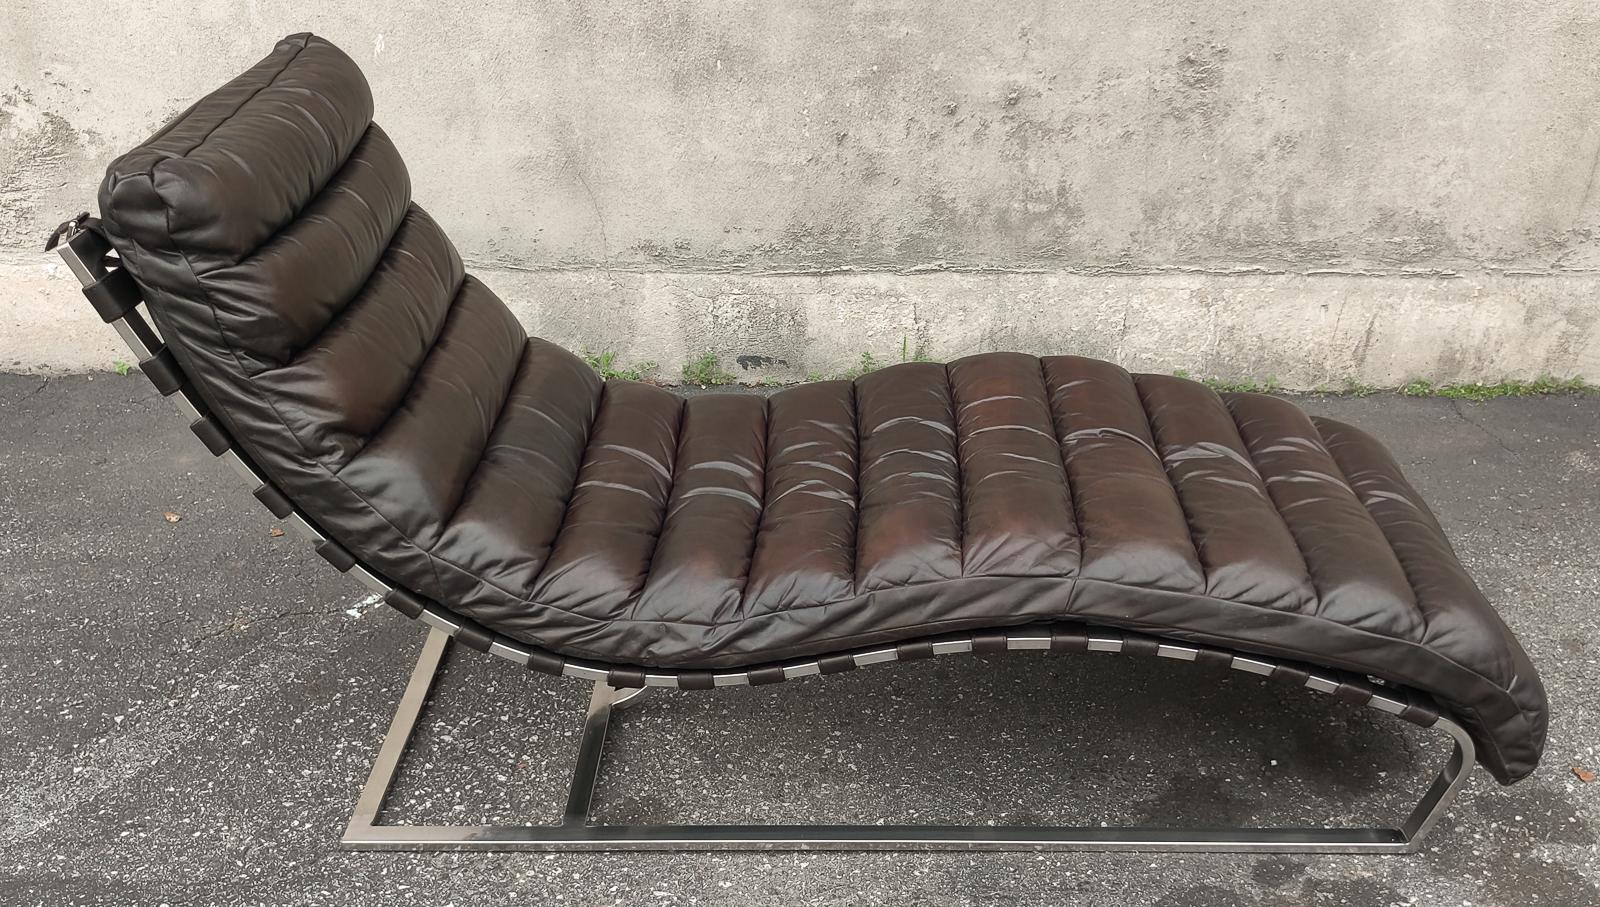 Inspiriert von der klassischen Silhouette der 1960er Jahre, schmiegt sich dieser Stuhl mit seinen anmutigen Kurven dem Körper an und bietet so optimalen Komfort. Die aus schwerem verchromtem Stahl und hochwertigem genähtem Leder gefertigte Liege ist